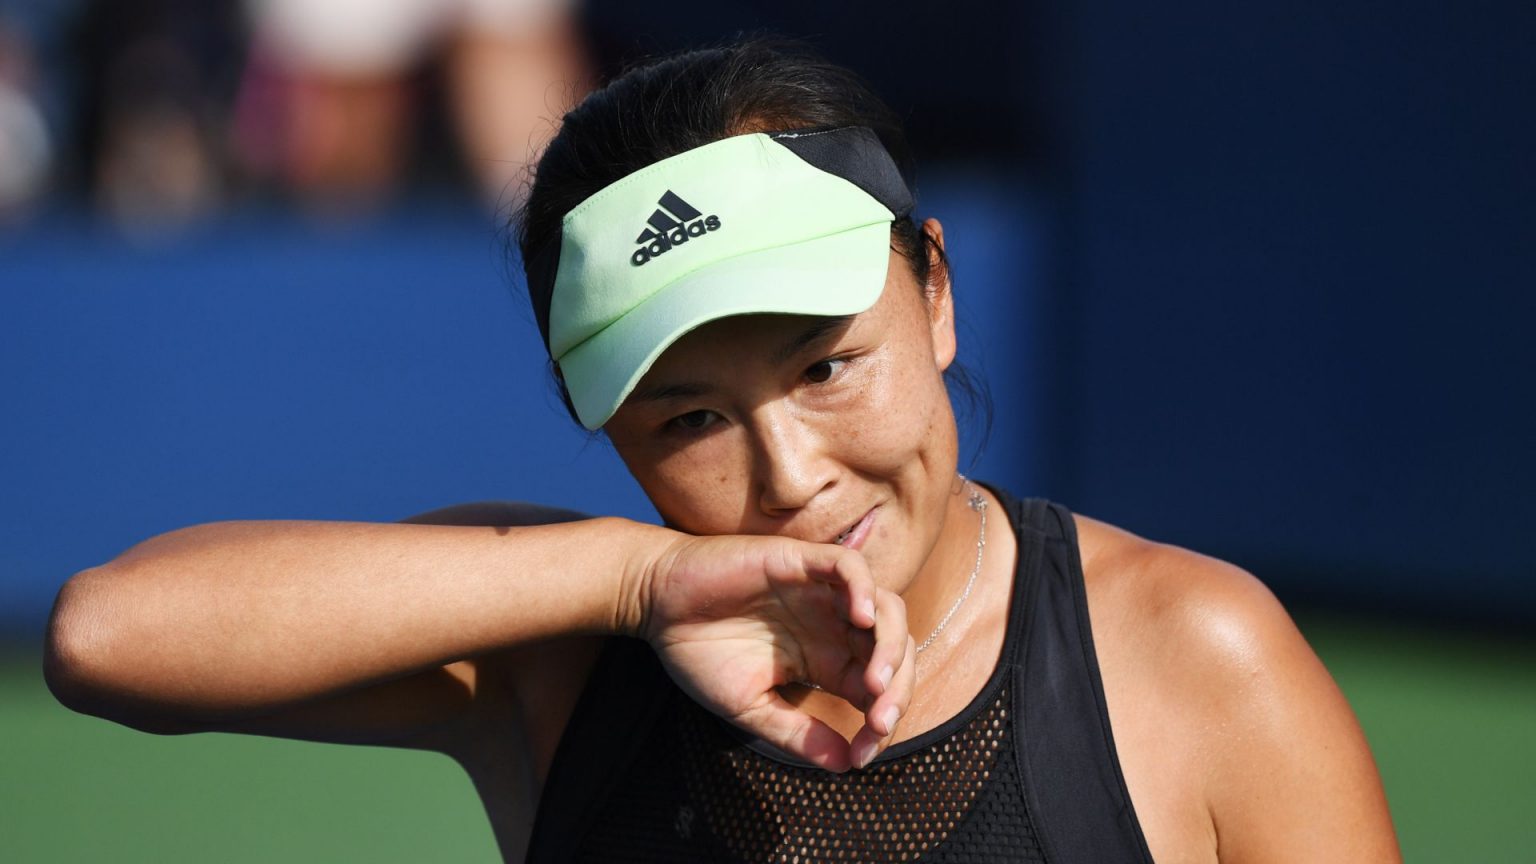 La WTA suspende sus torneos en China por el ‘caso Peng Shuai’